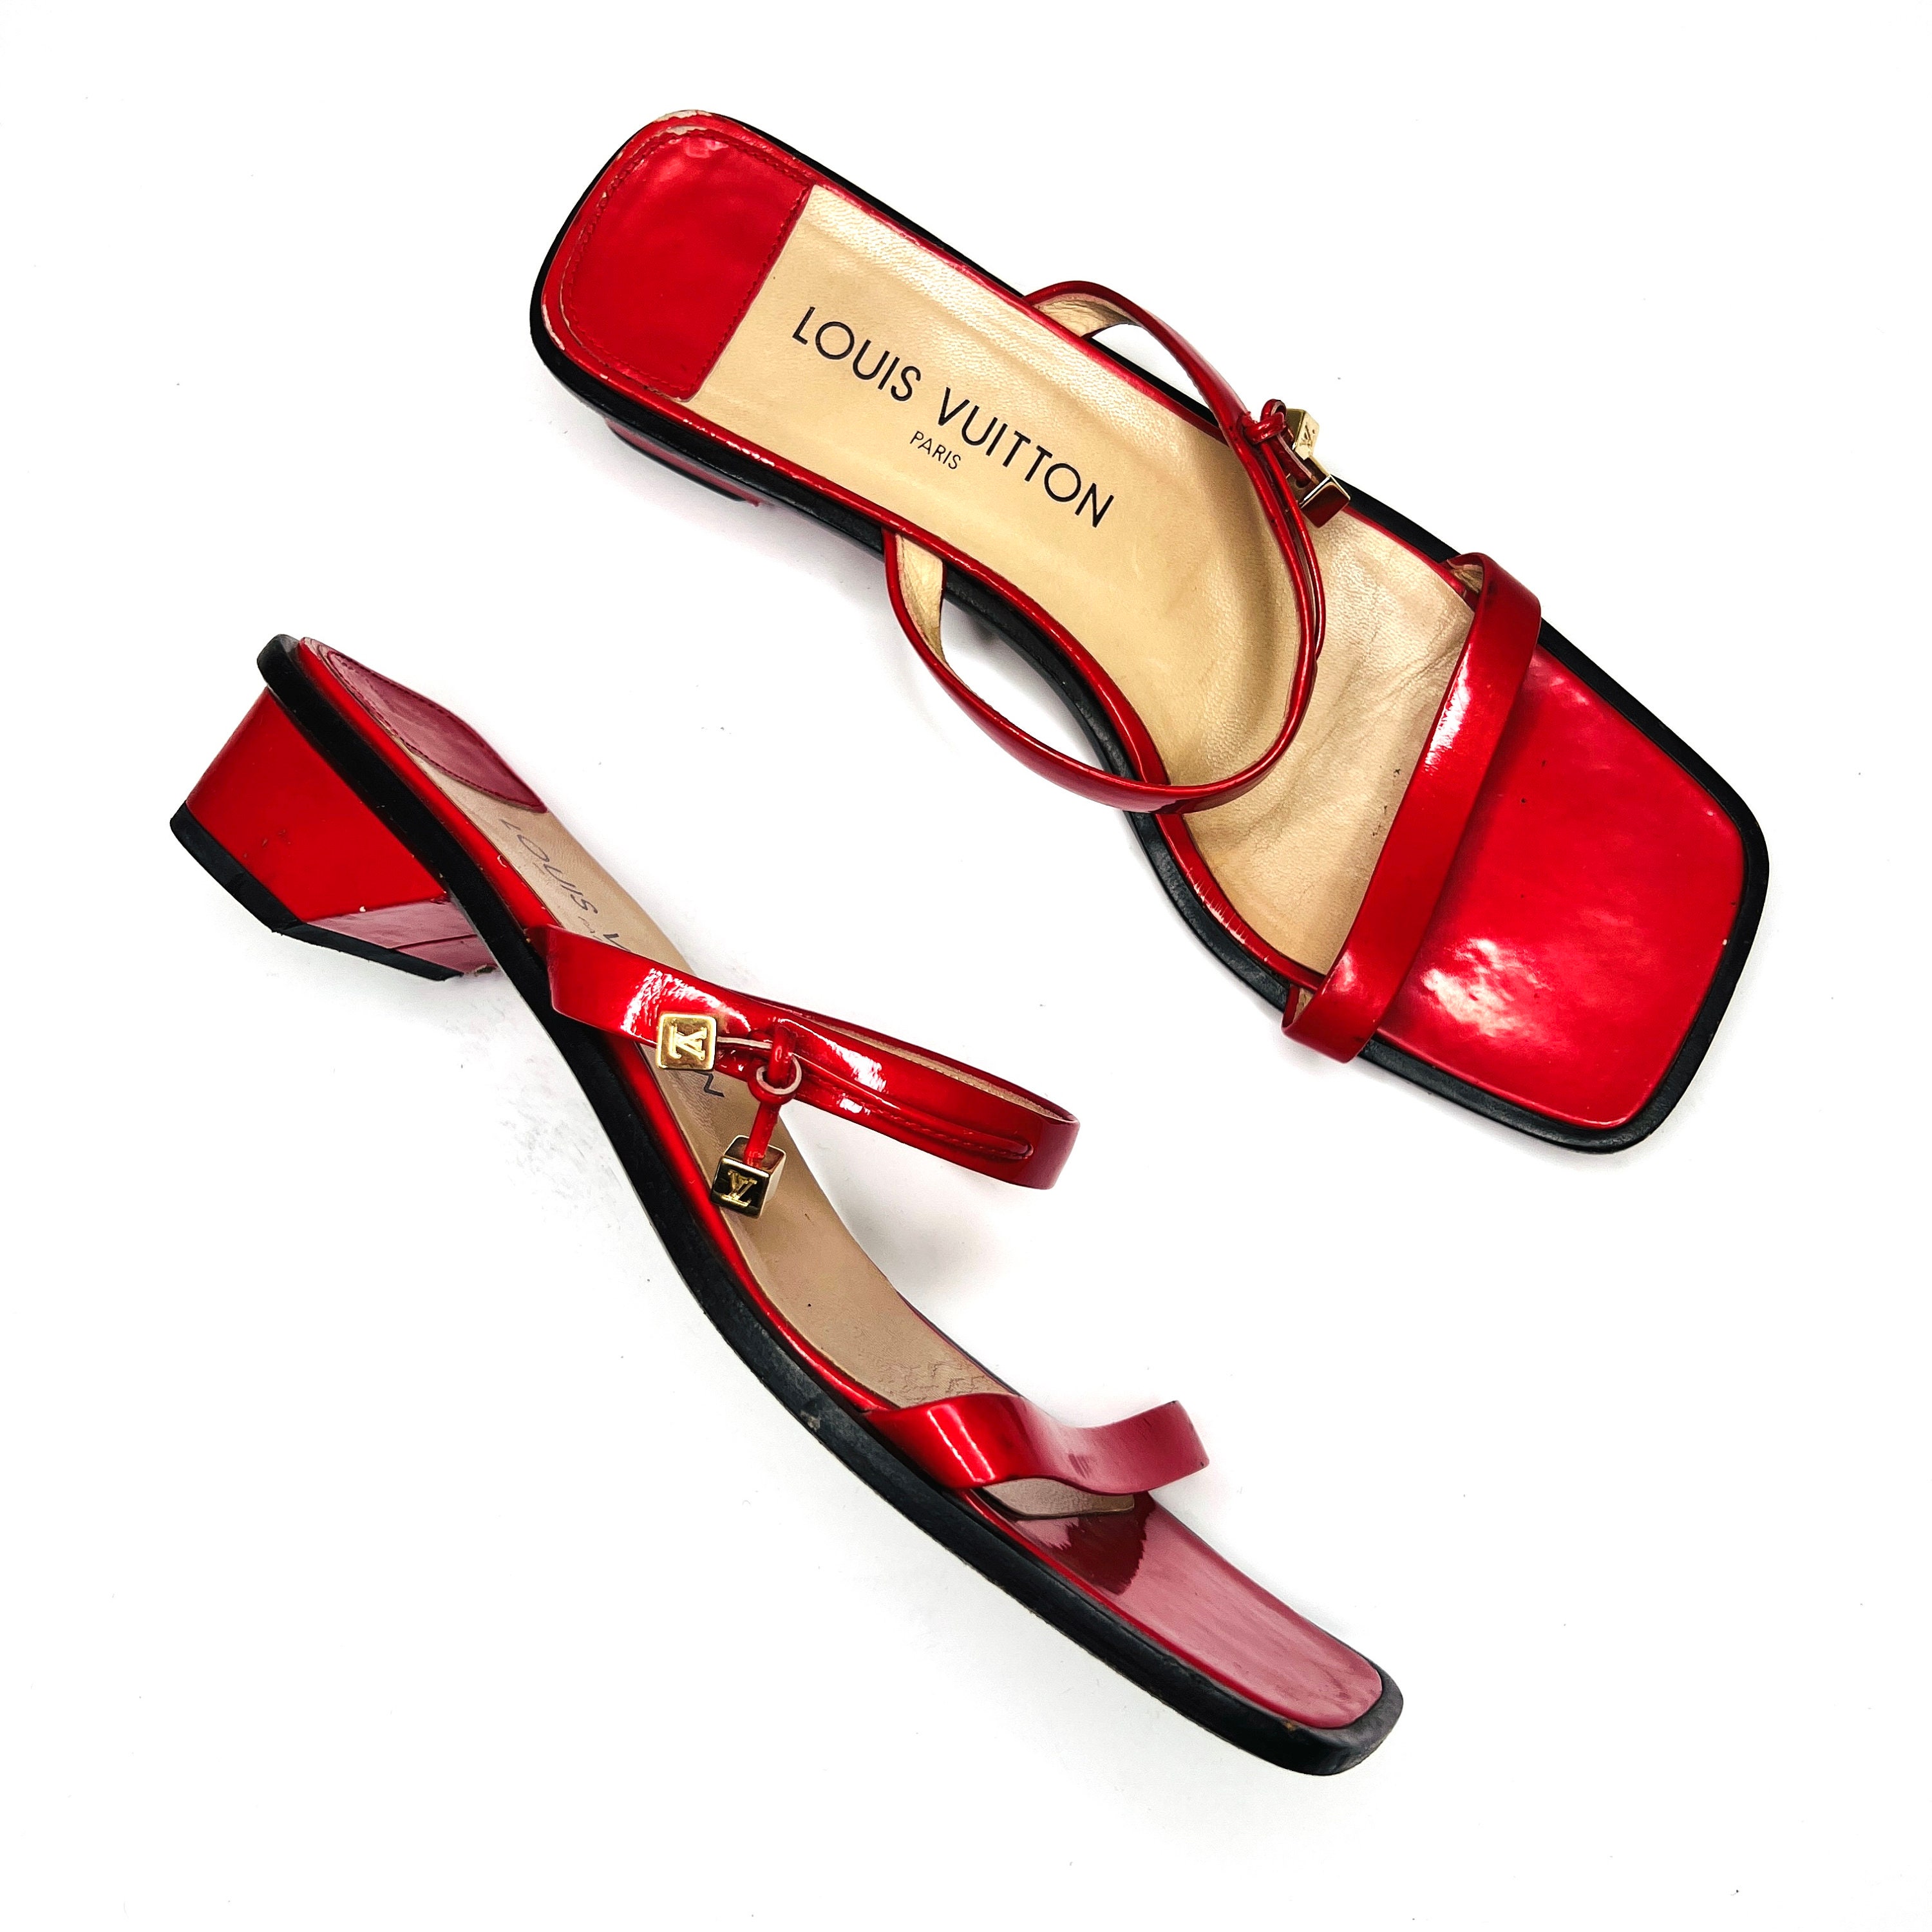 LOUIS VUITTON Monogram sandalen voor dames